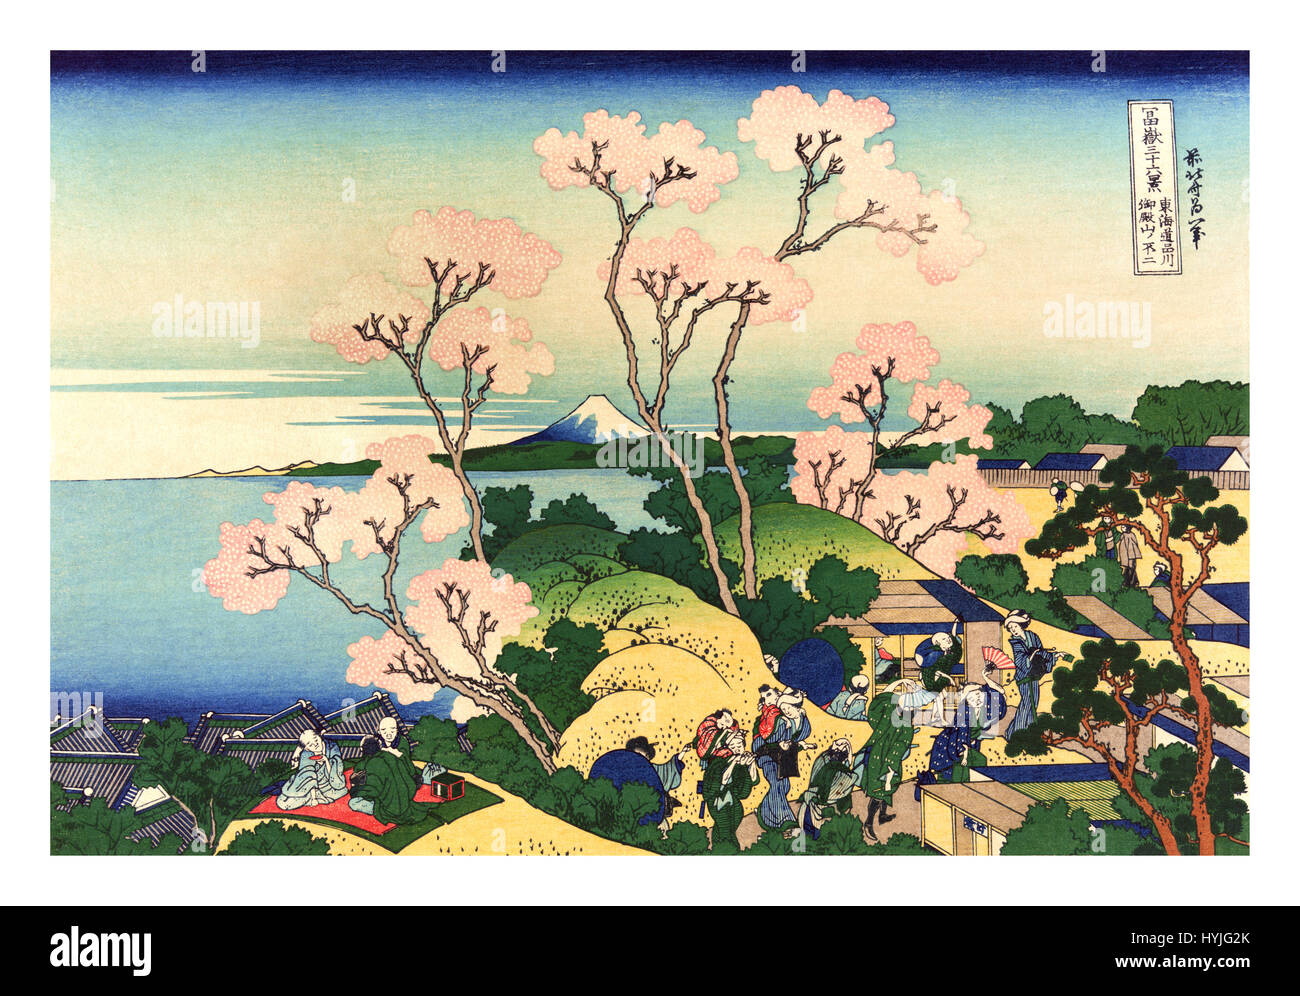 36 Ansichten des Berg Fuji ist eine Serie von Landschaft durch den japanischen Künstler Hokusai (1760-1849). Die Serie zeigt Mount Fuji aus verschiedenen Orten und in verschiedenen Jahreszeiten und Witterungsbedingungen. Stockfoto